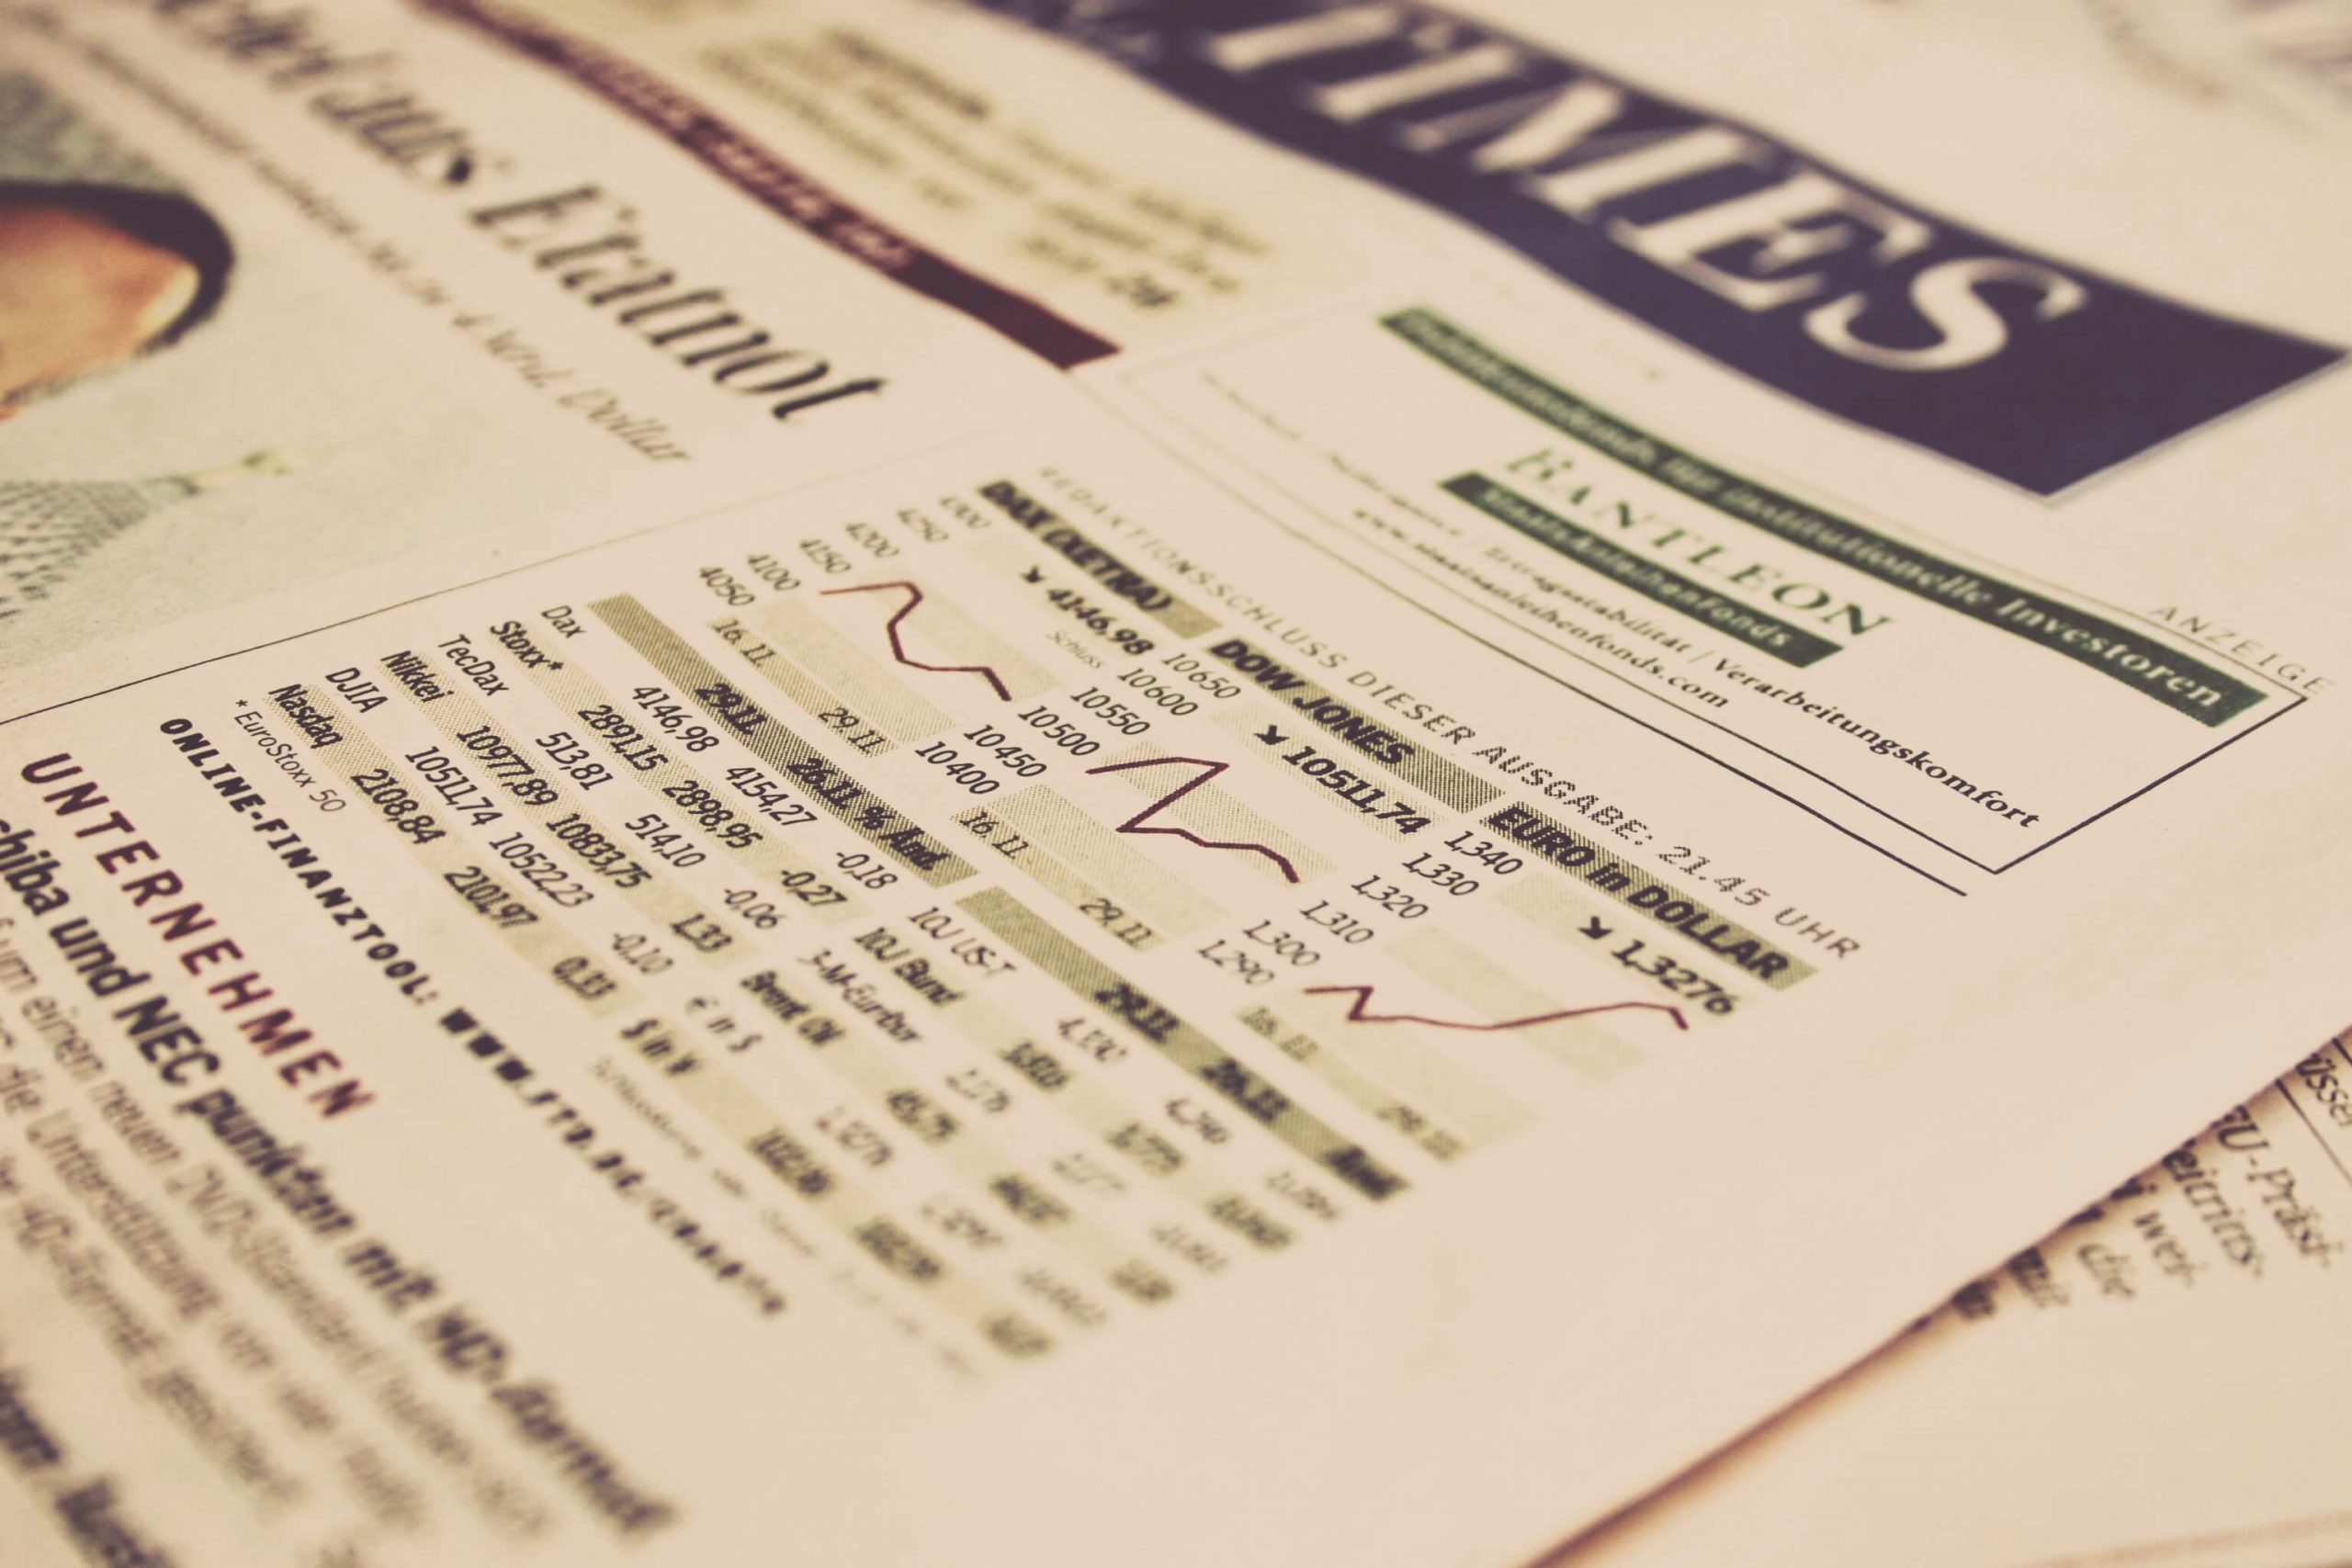 Imagen que muestra un periódico con diferentes variables financieras en el mercado de valores